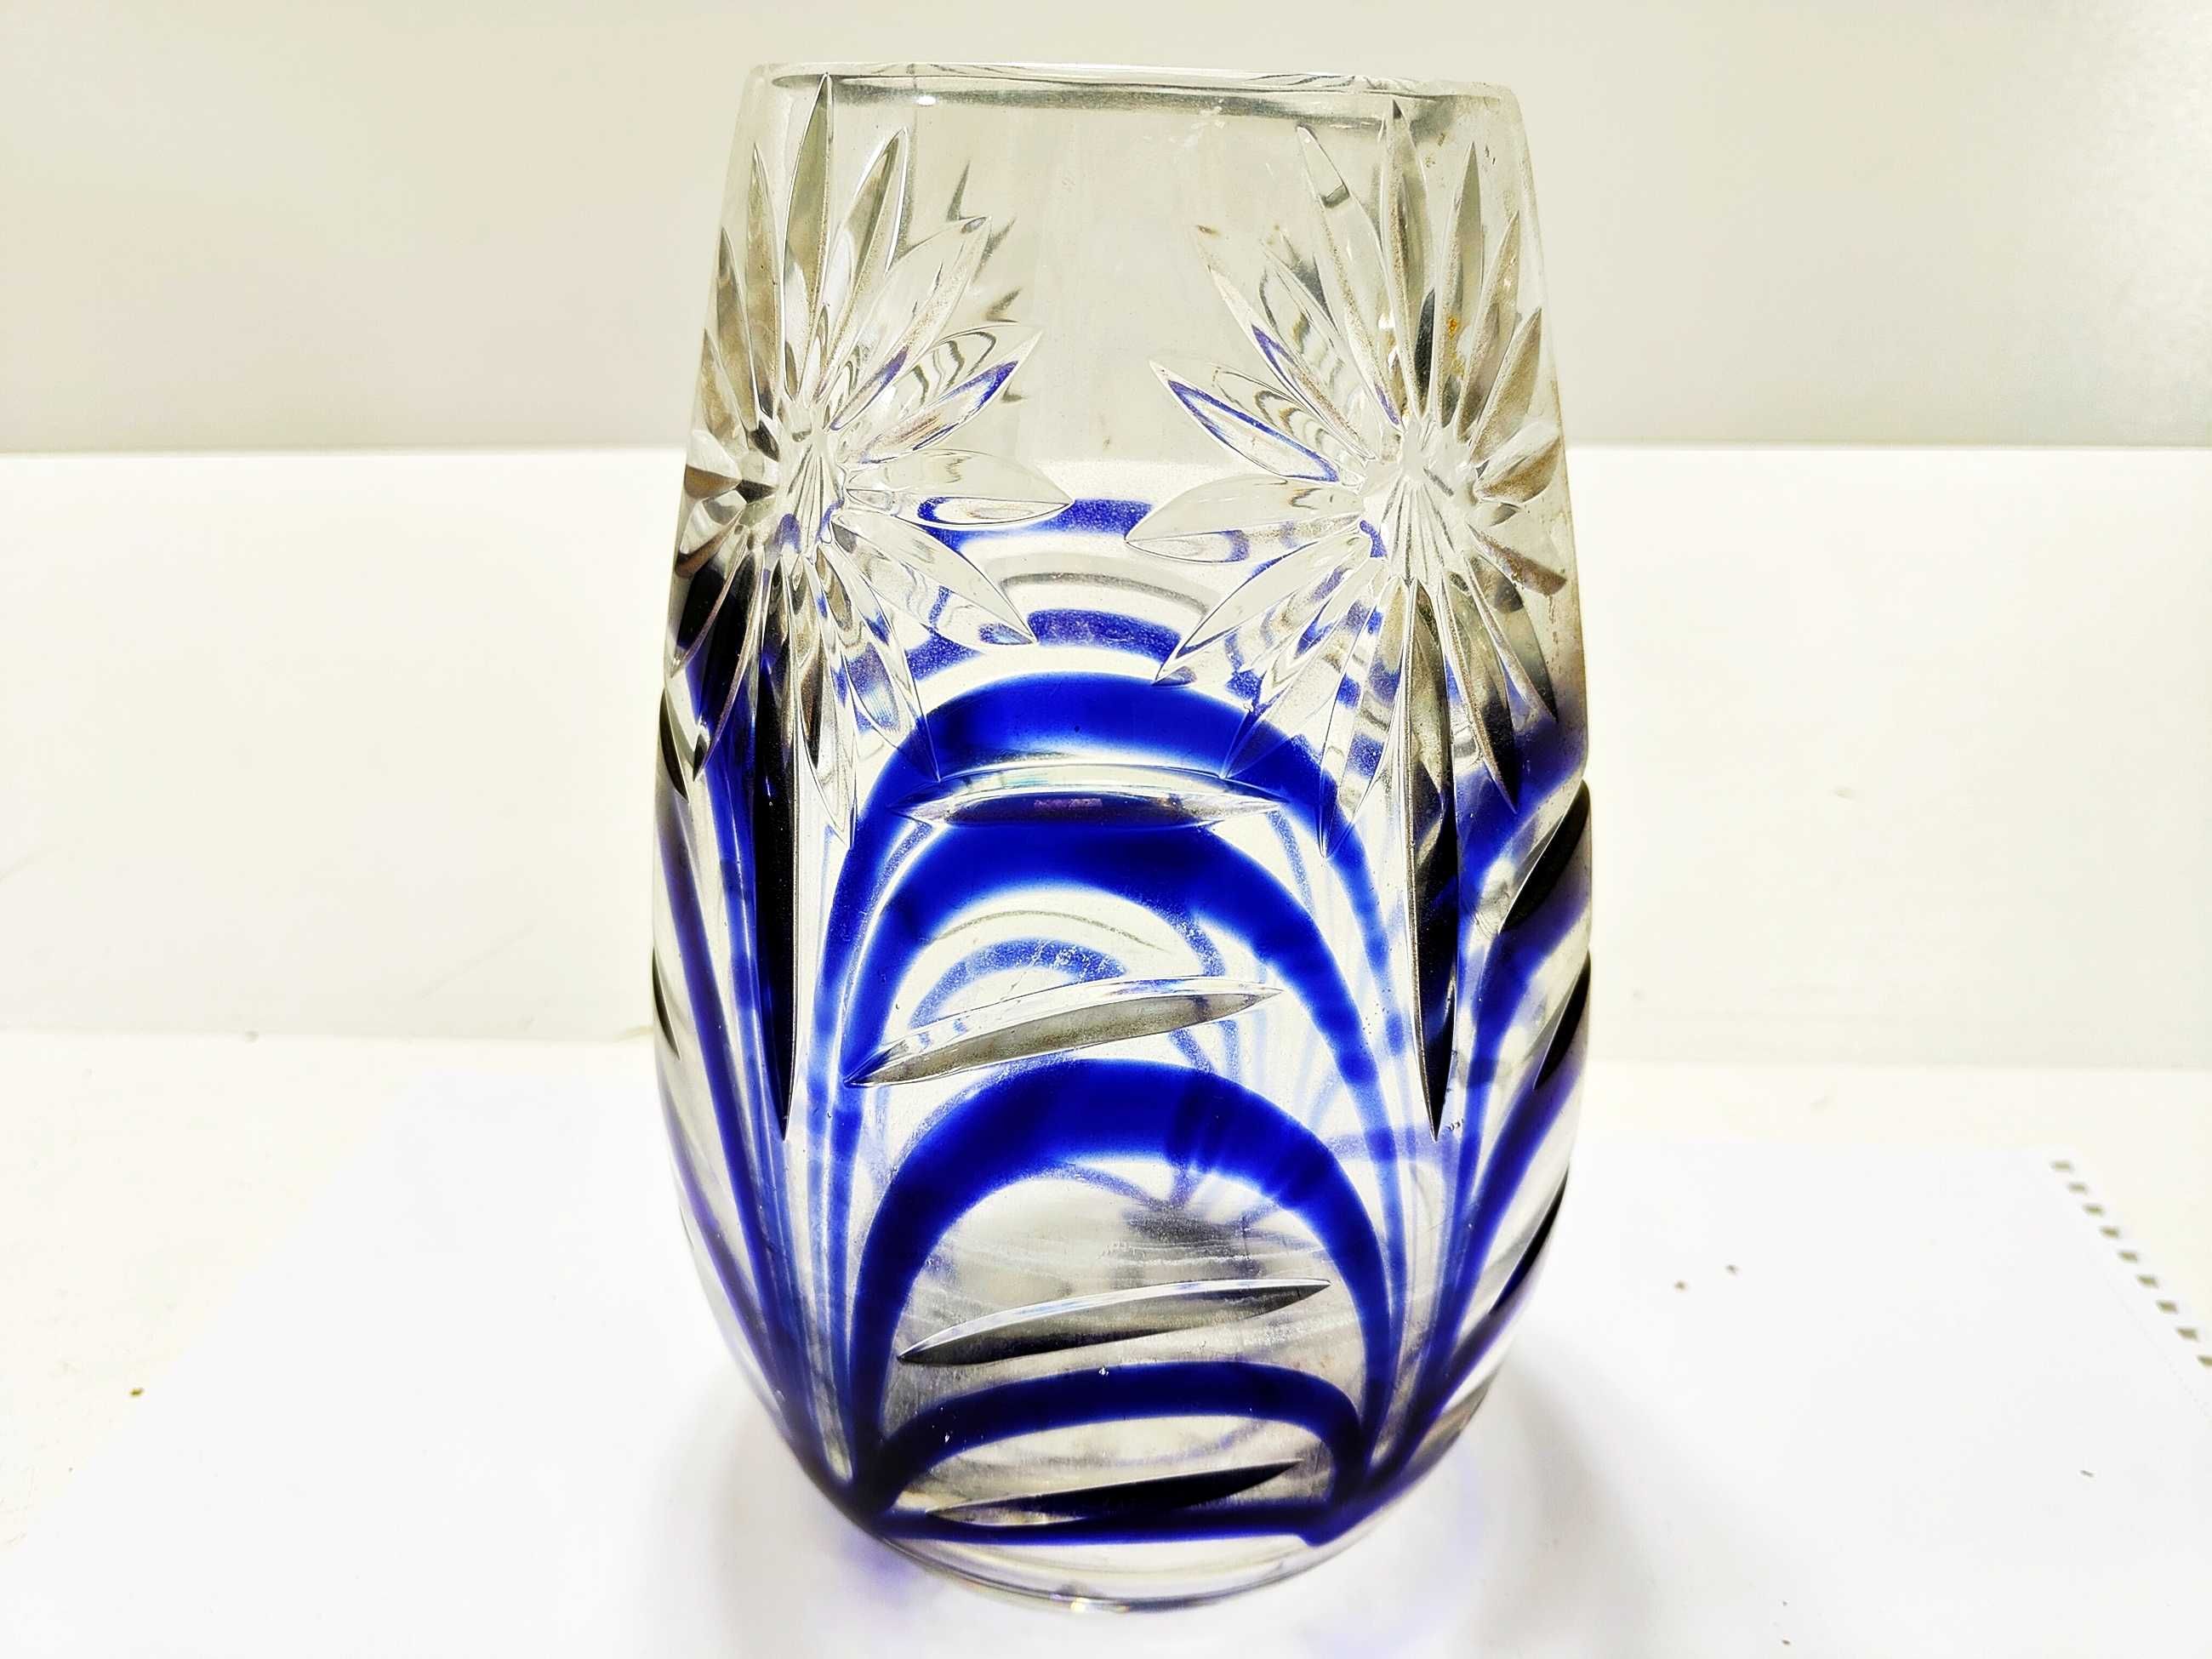 Kryształowy wazon z niebieskimi zdobieniami